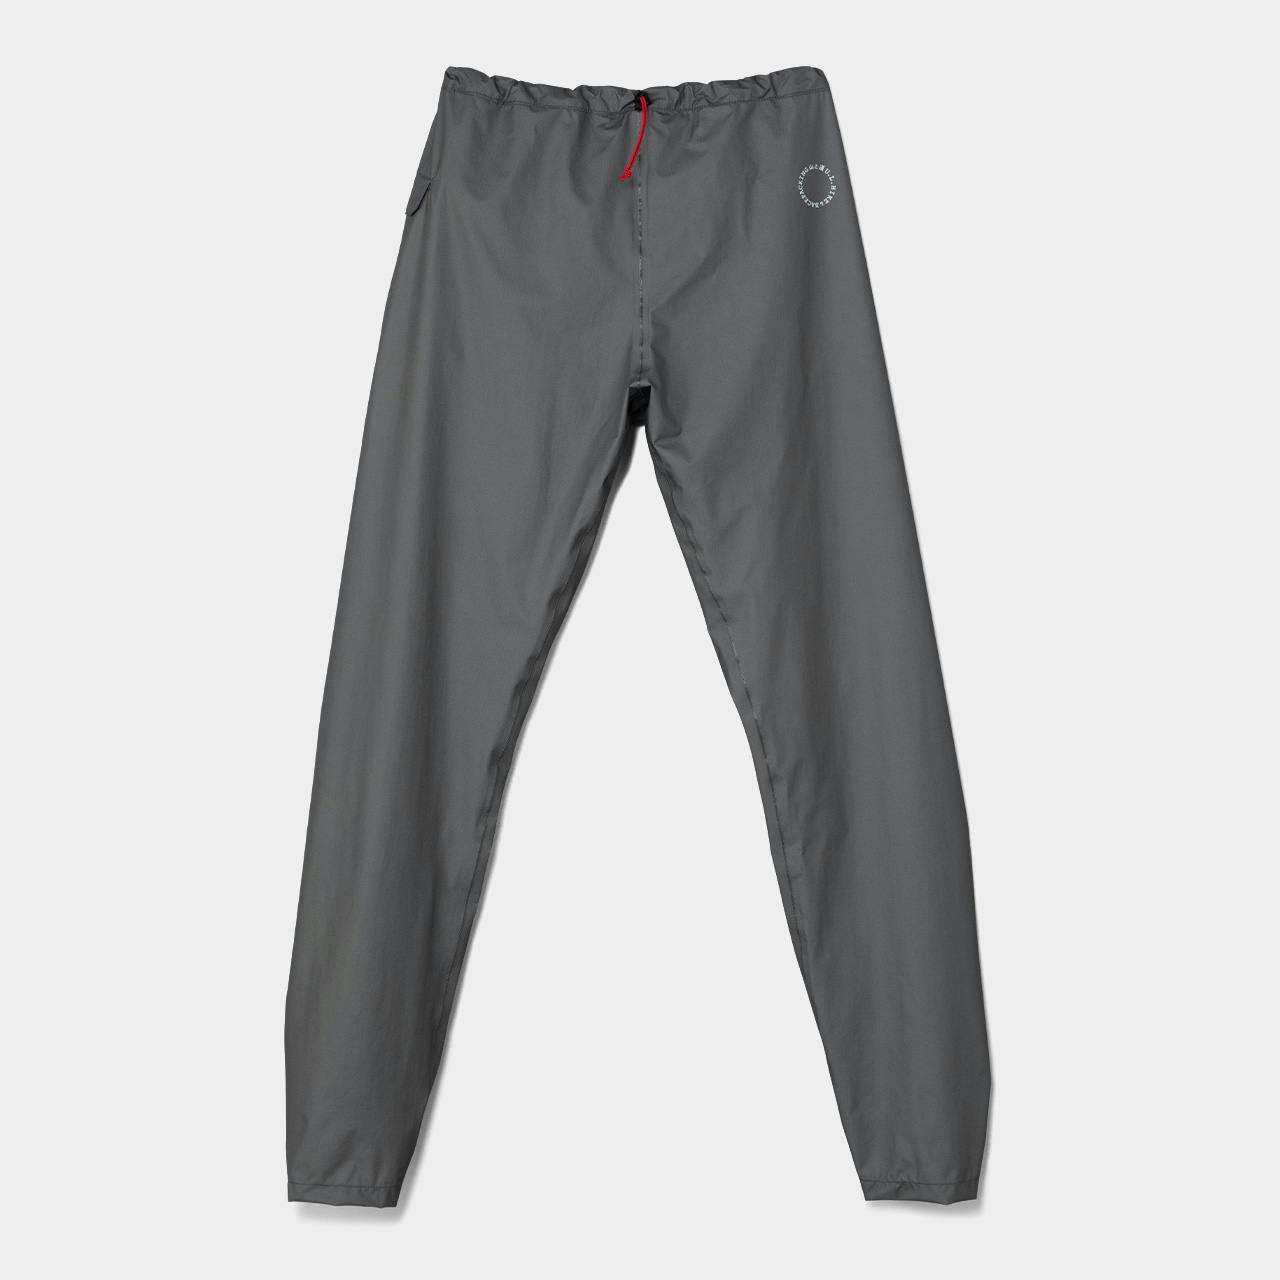 UL All-weather Pants<br>For Sale Apr 24, 18:00 JST<br>Restocked on Online Shop<br>New Smartphone Pocket Addition